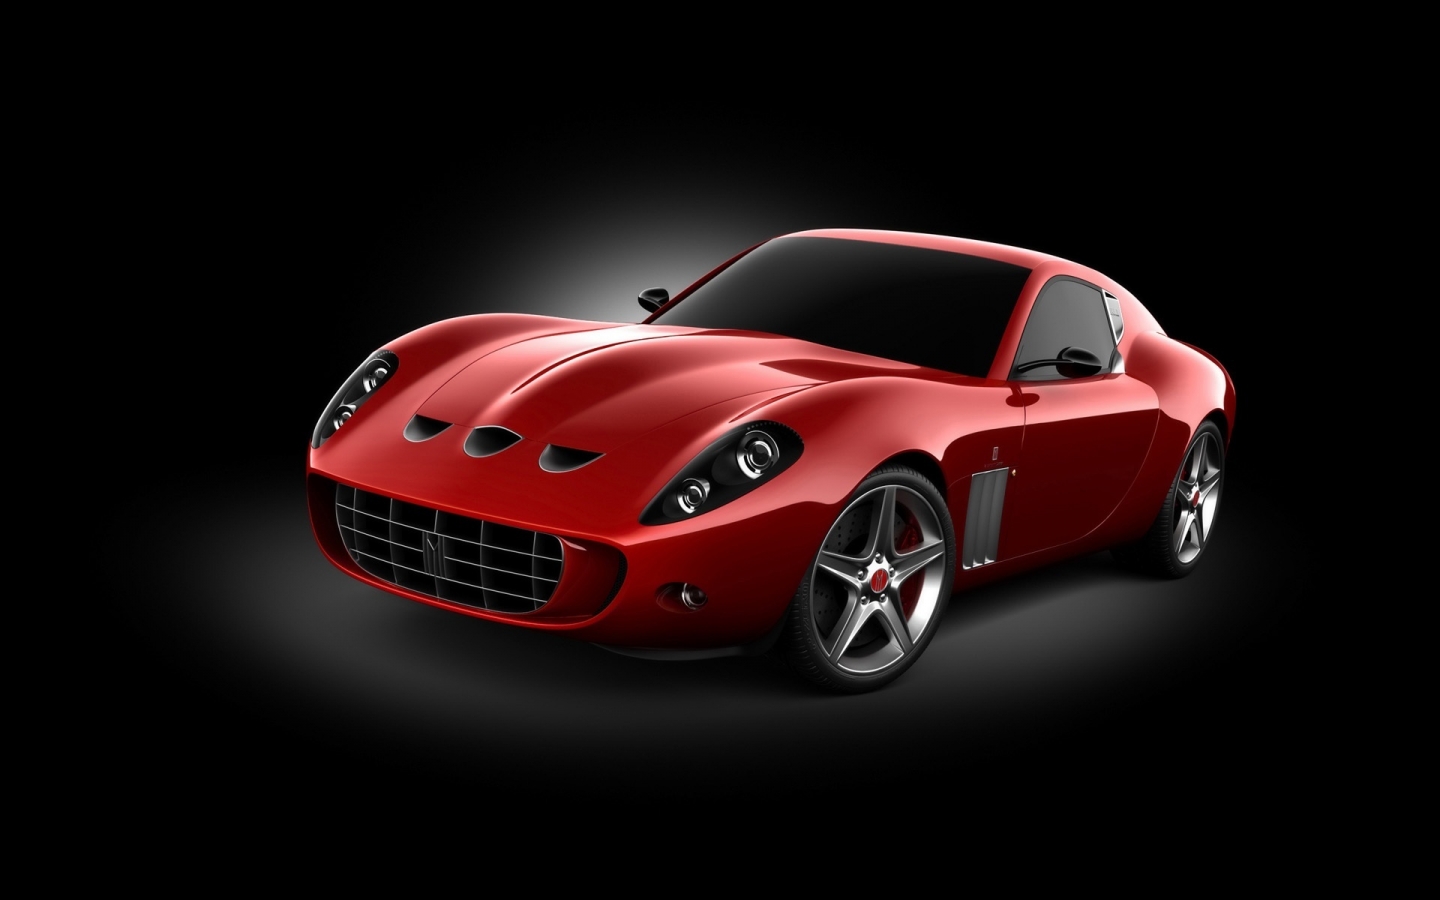 Vandenbrink Ferrari 599 GTO 2009 for 1440 x 900 widescreen resolution